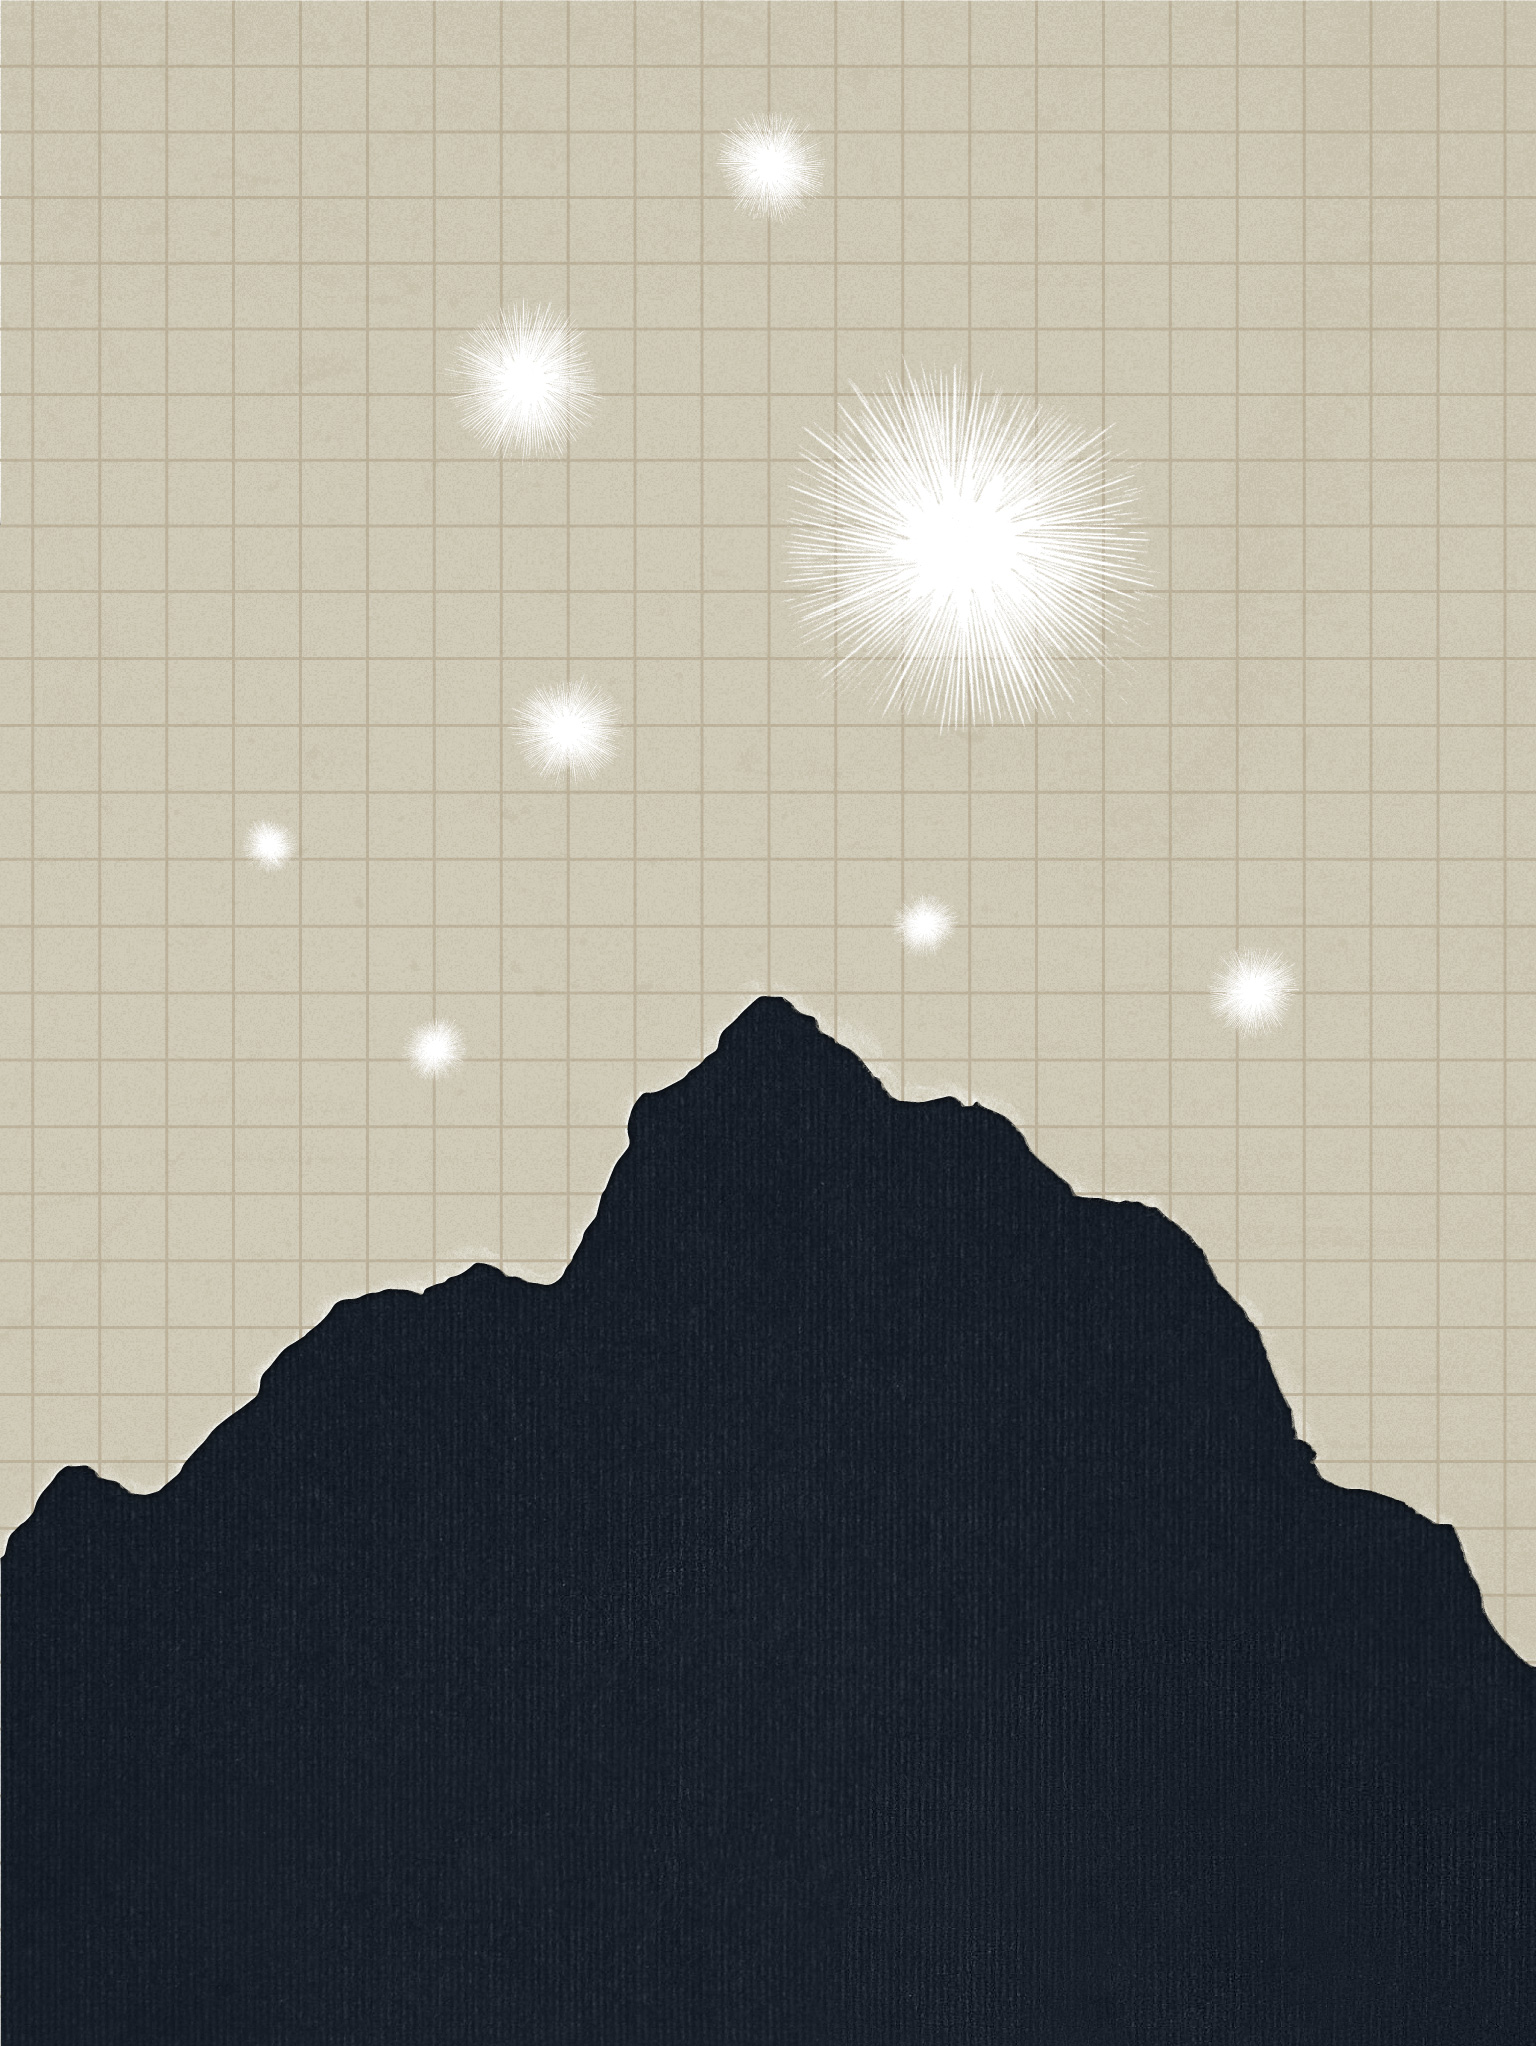 Illustration of mountains under stars.